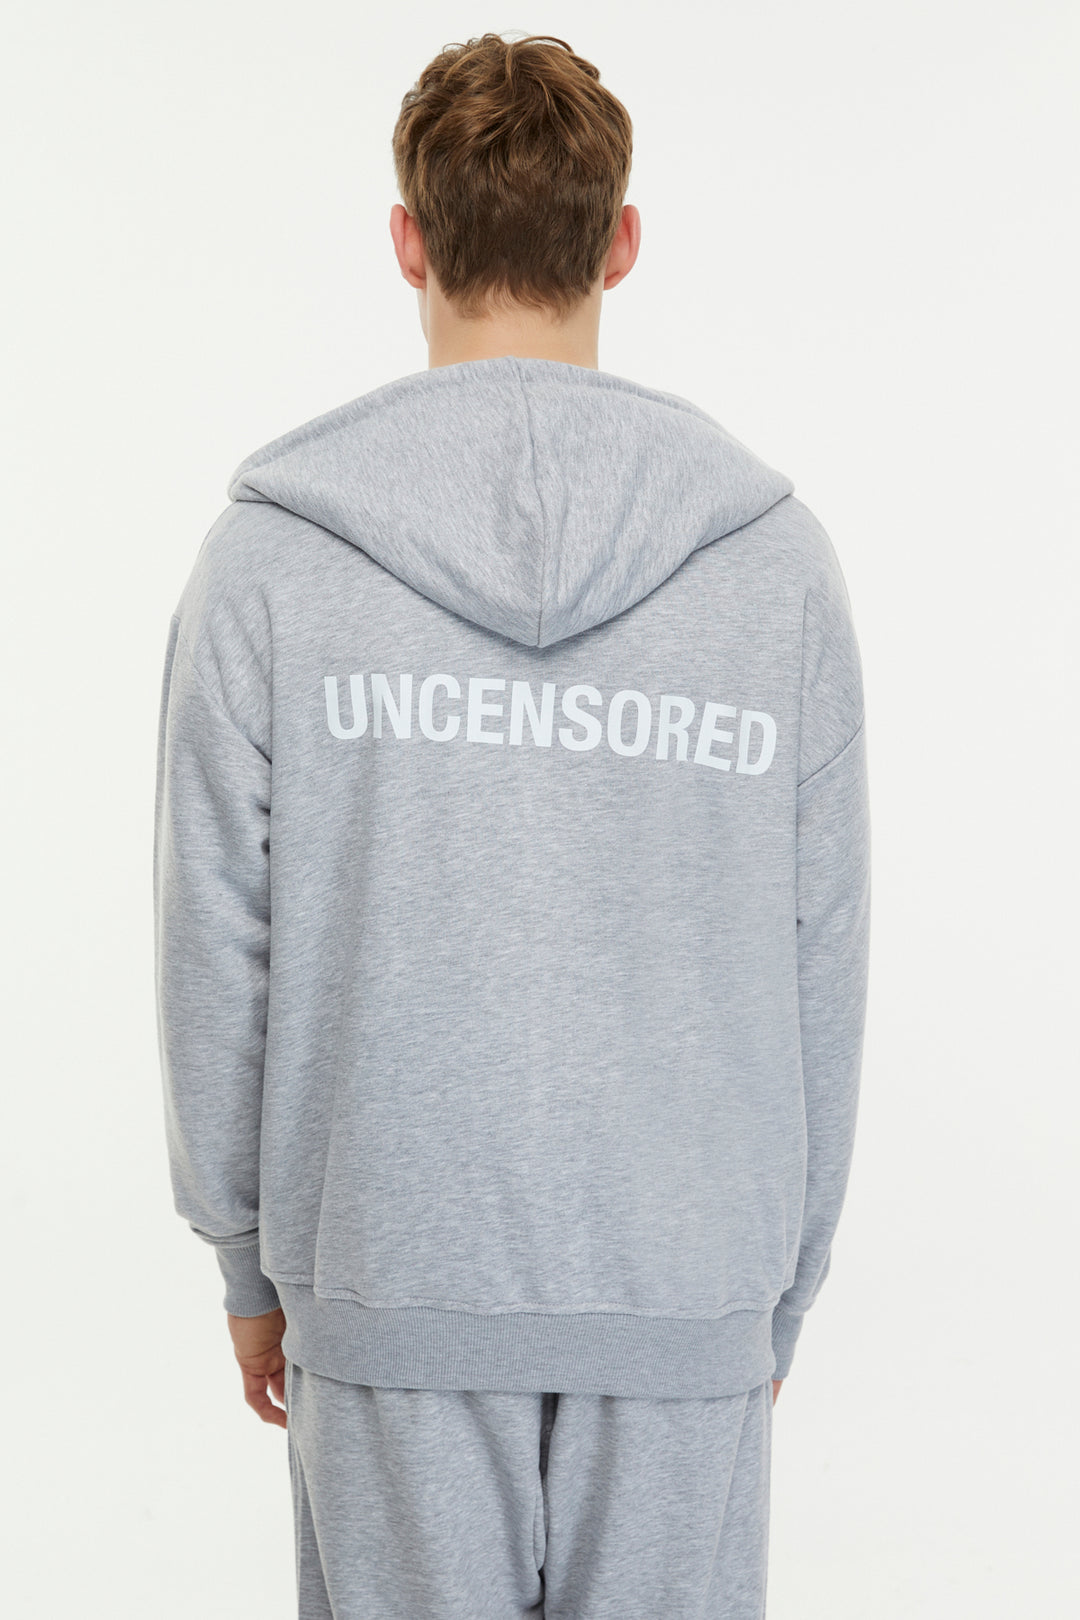 Uncensored / Zip Up Hoodie